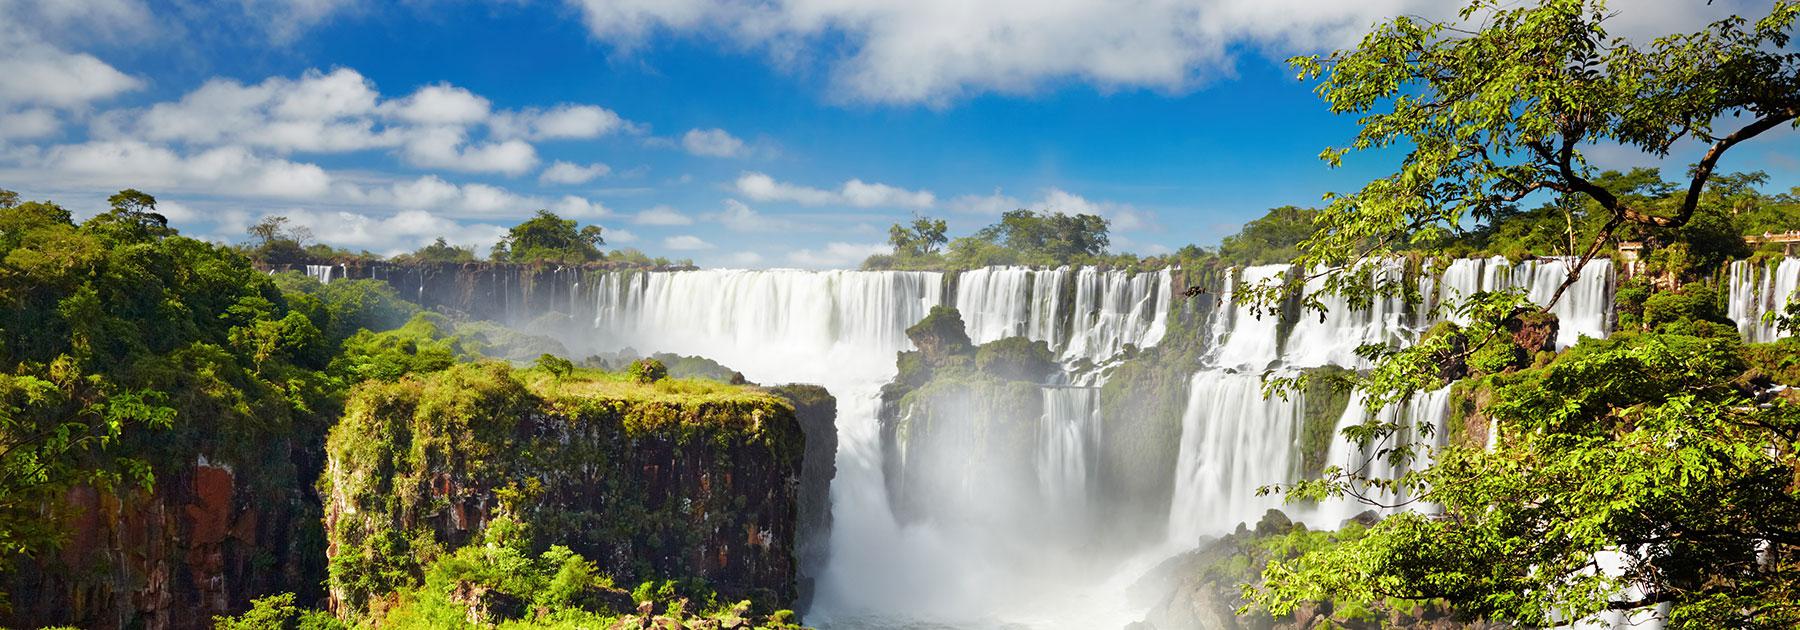 Argentina: Buenos Aires, Uruguay, Iguazu Falls Group Tour